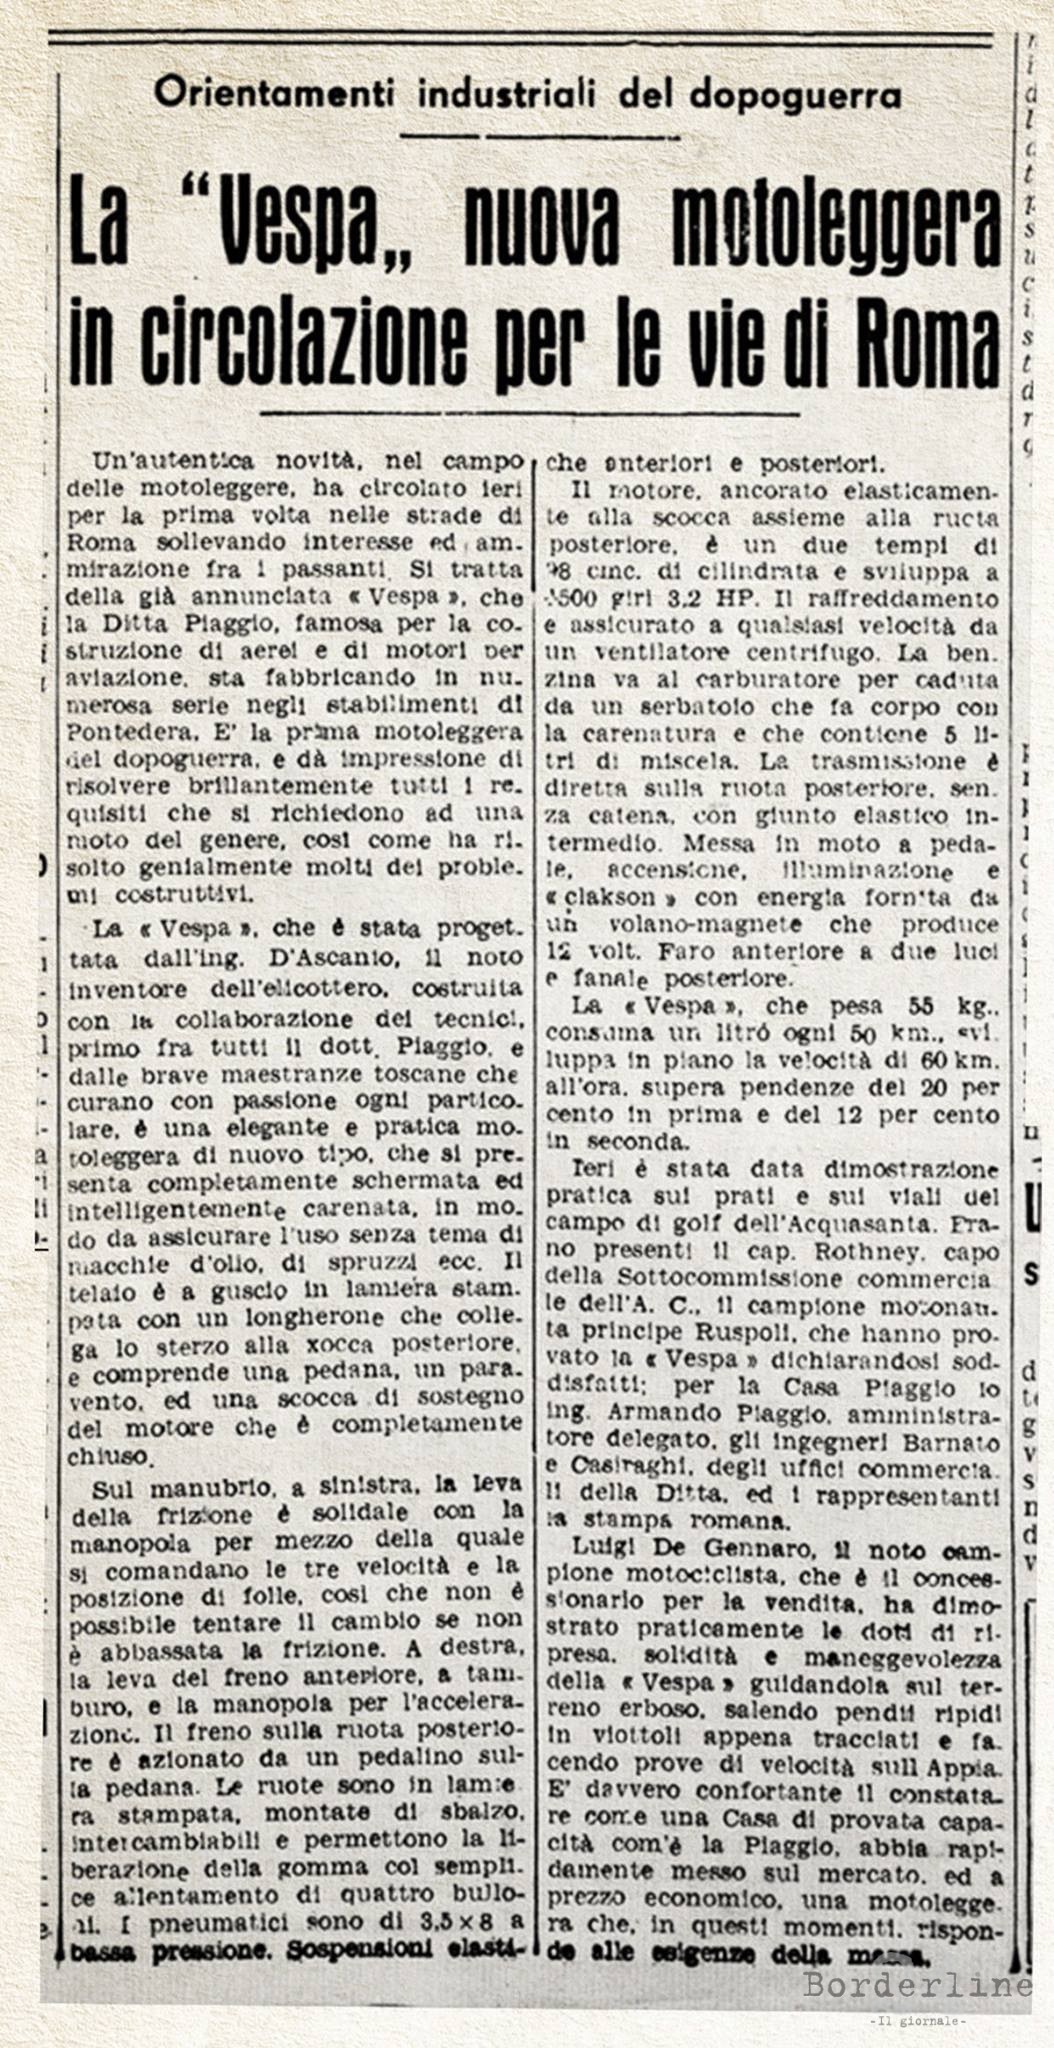 Articolo Vespa 29 marzo 1946